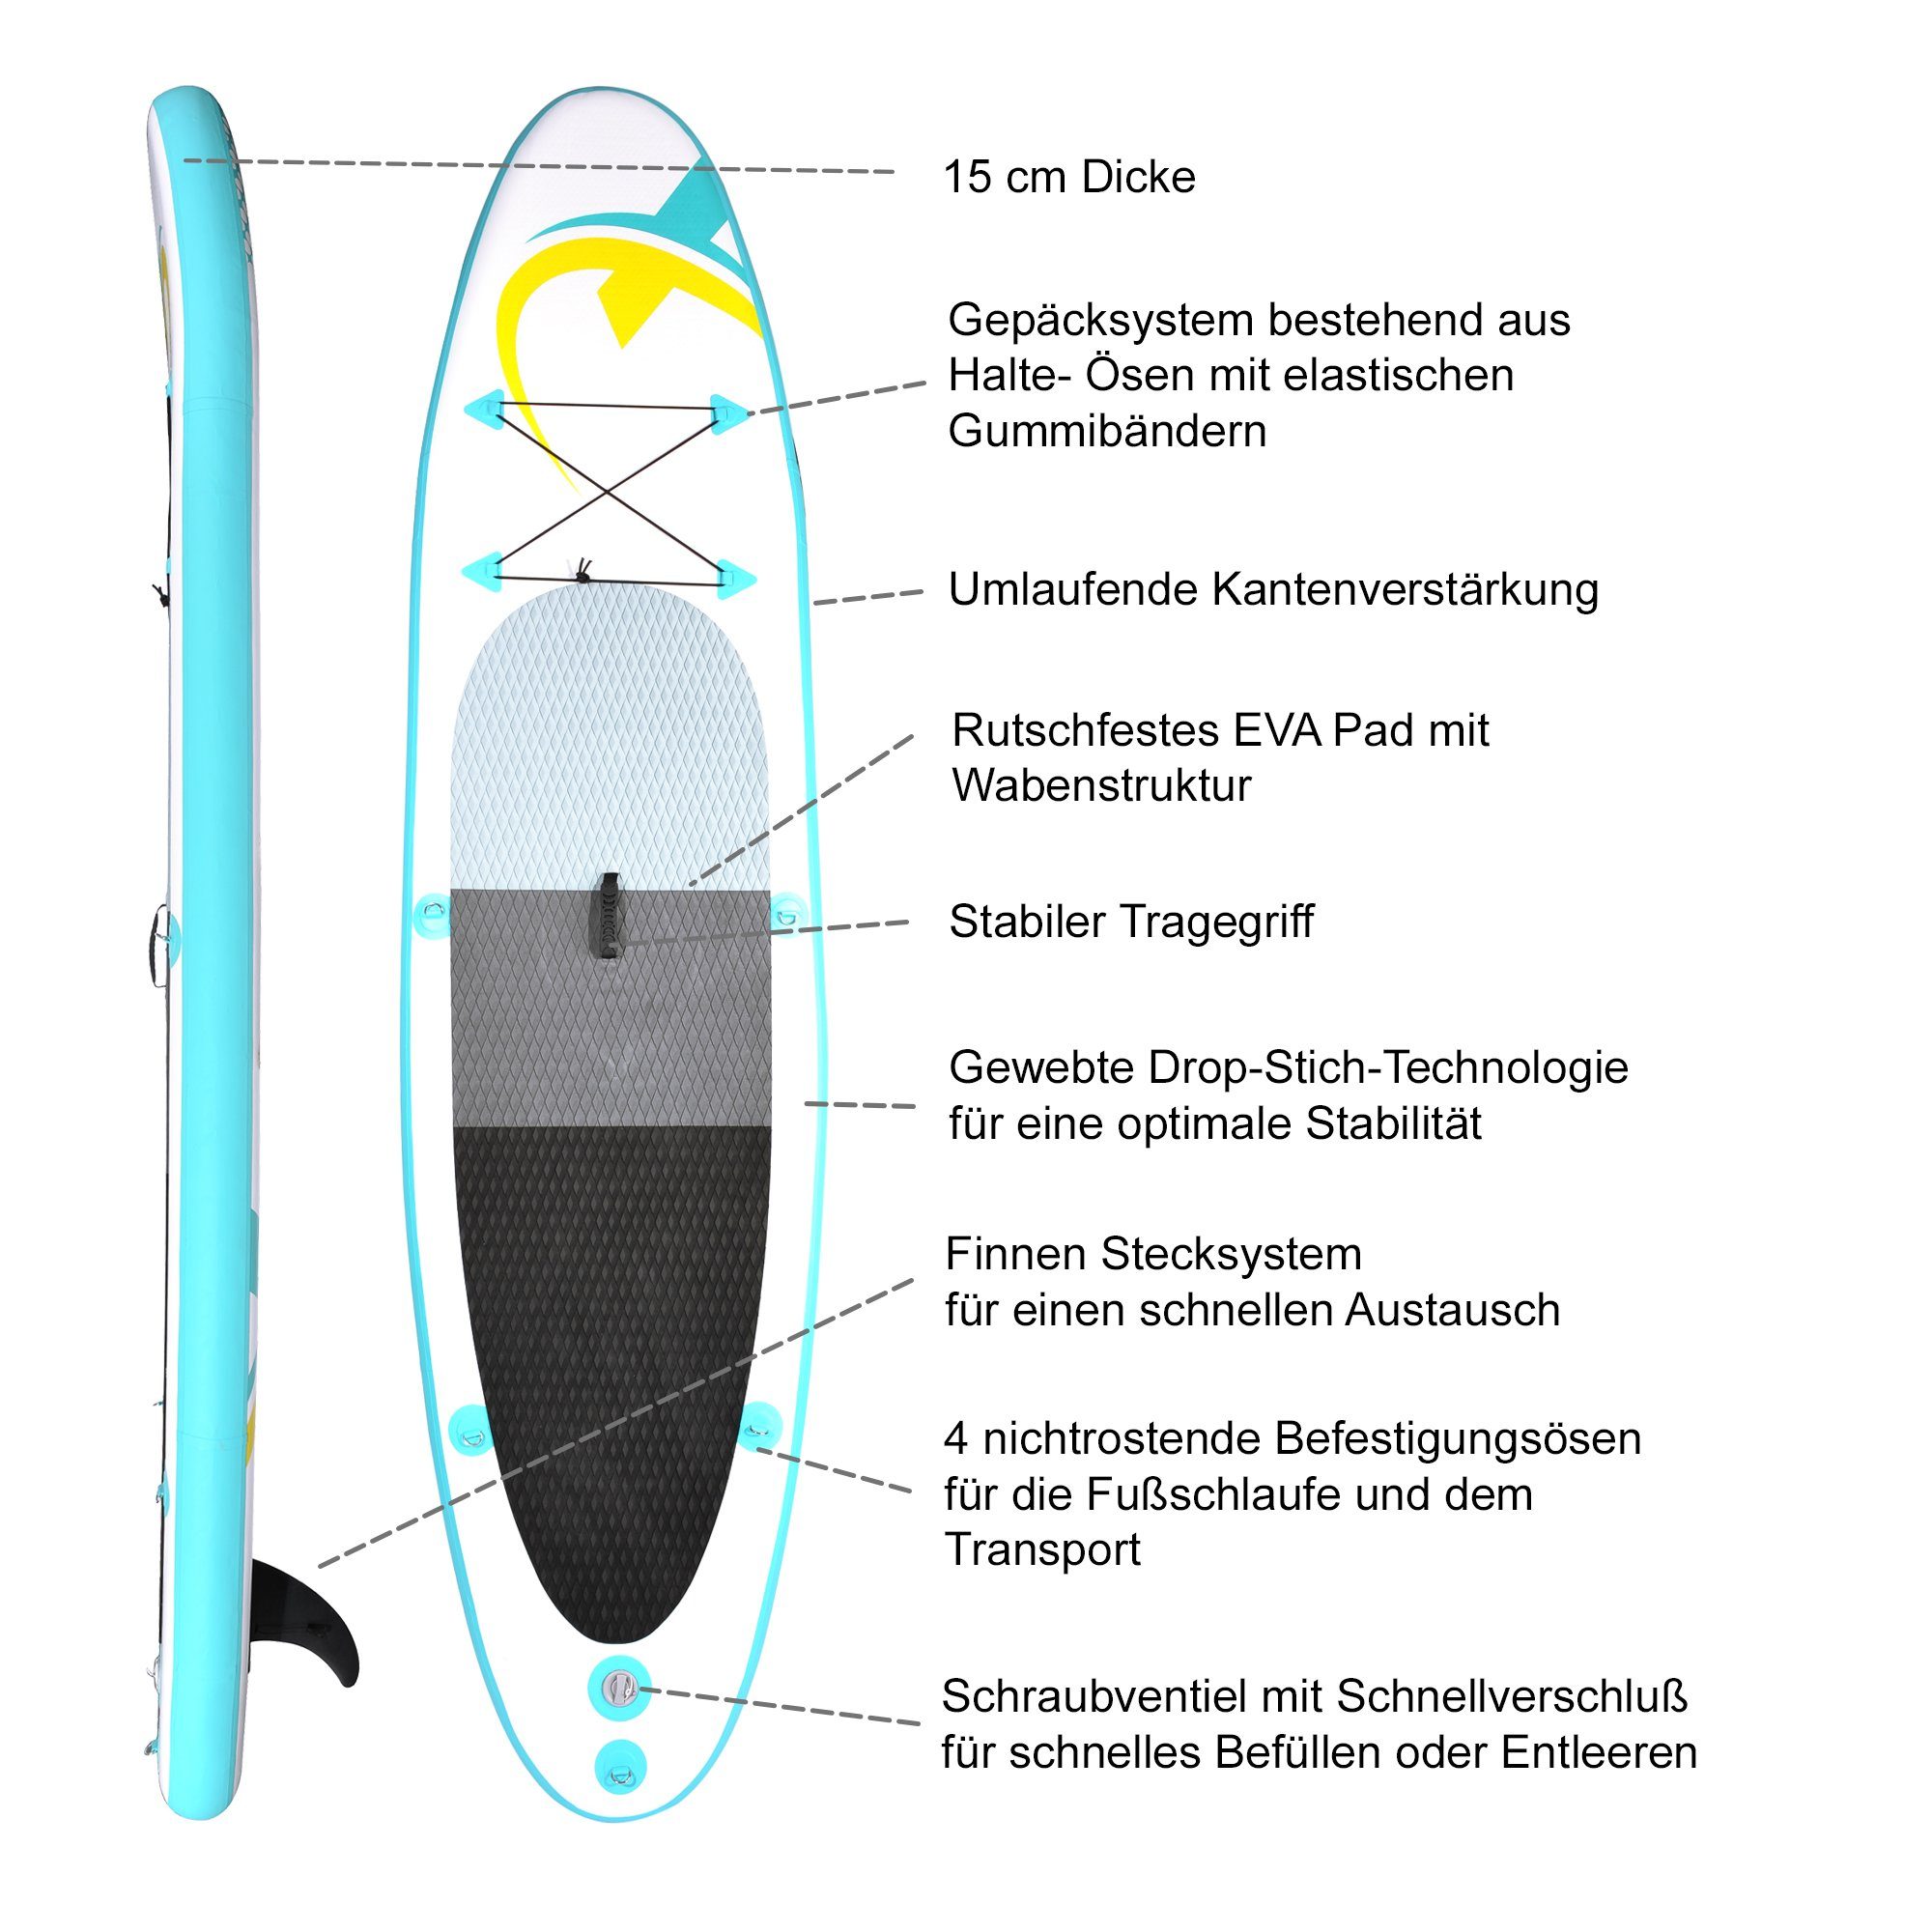 NEMAXX Inflatable SUP-Board, Nemaxx Surf-Board zu inkl. aufblasbar 320x78x15cm, Stand türkis/gelb Paddel - - up - & Board Tasche, PB320 Paddle transportieren Surfbrett, leicht